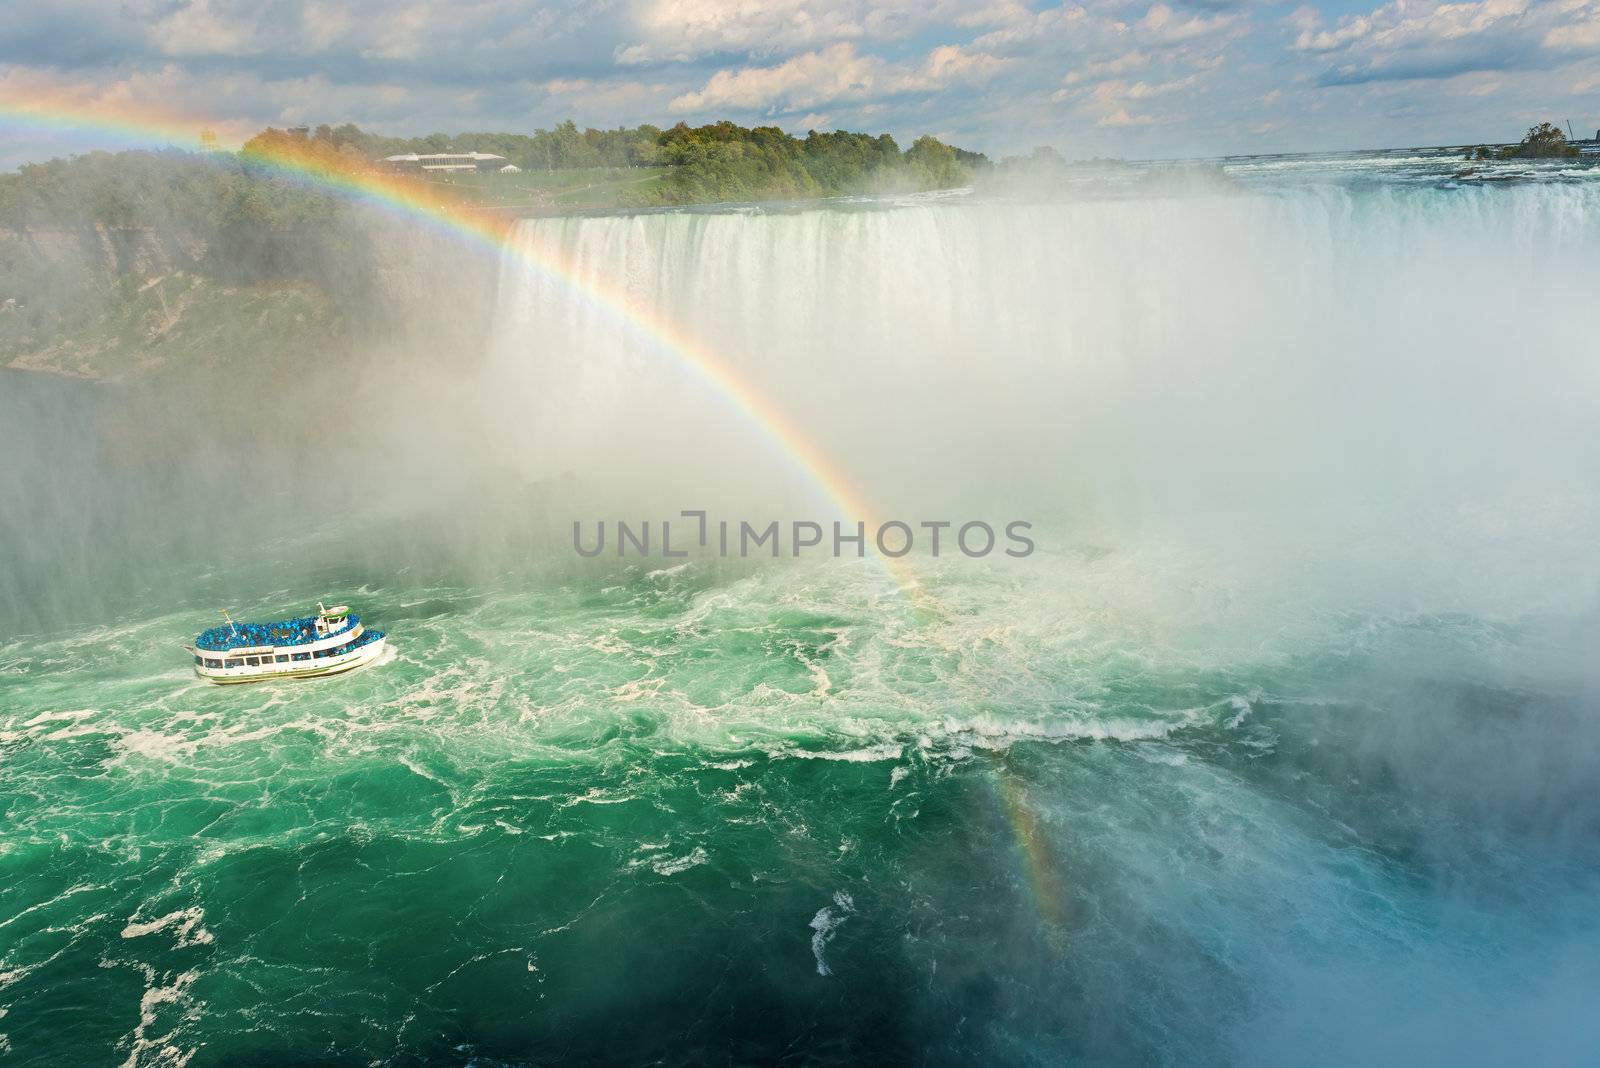 Niagara Falls, Ontario Canada by Marcus